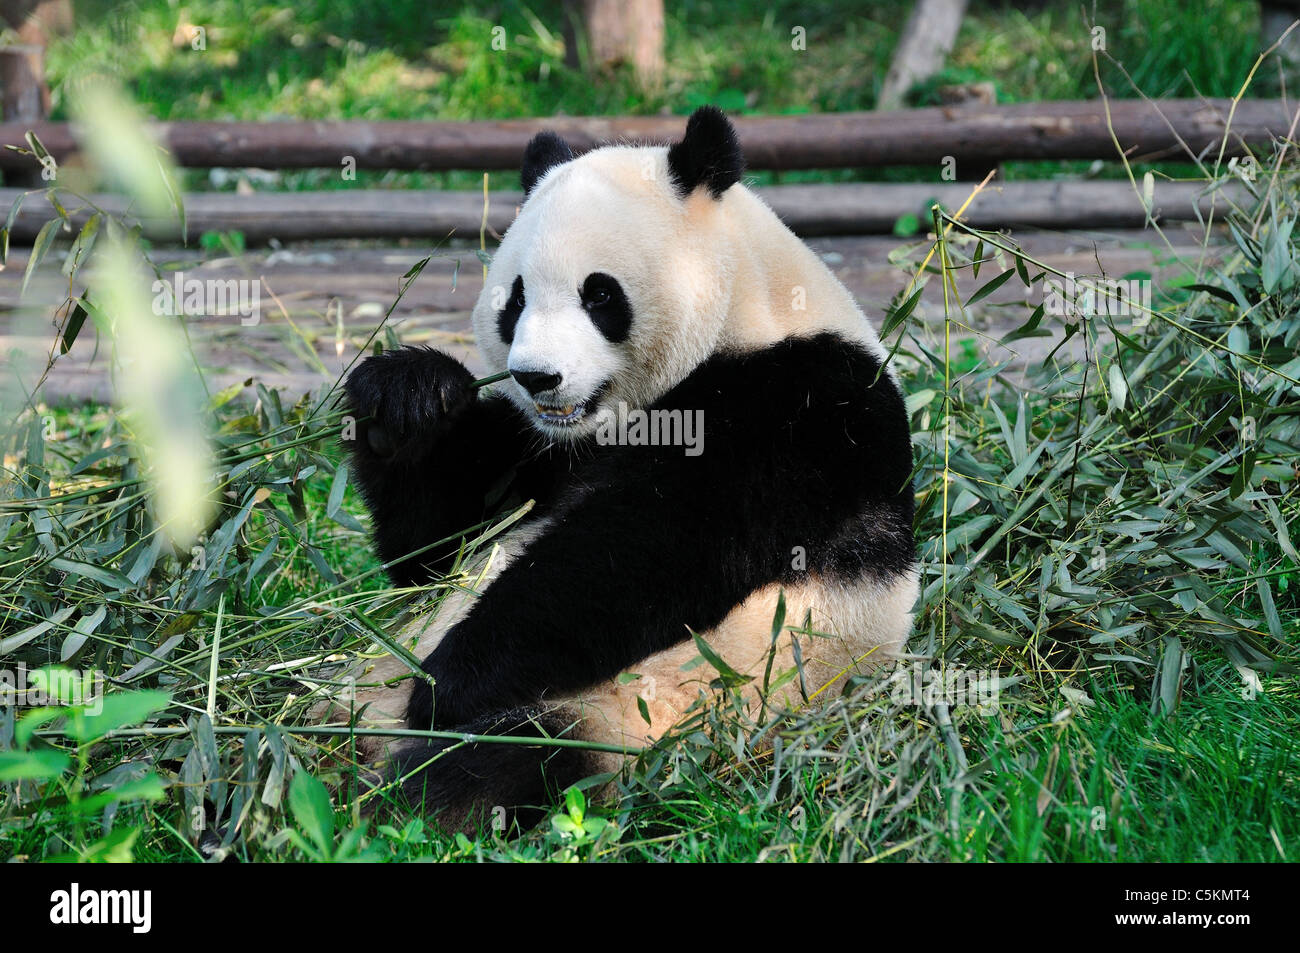 A giant panda eating bamboo. Chengdu, Sichuan, China. Stock Photo